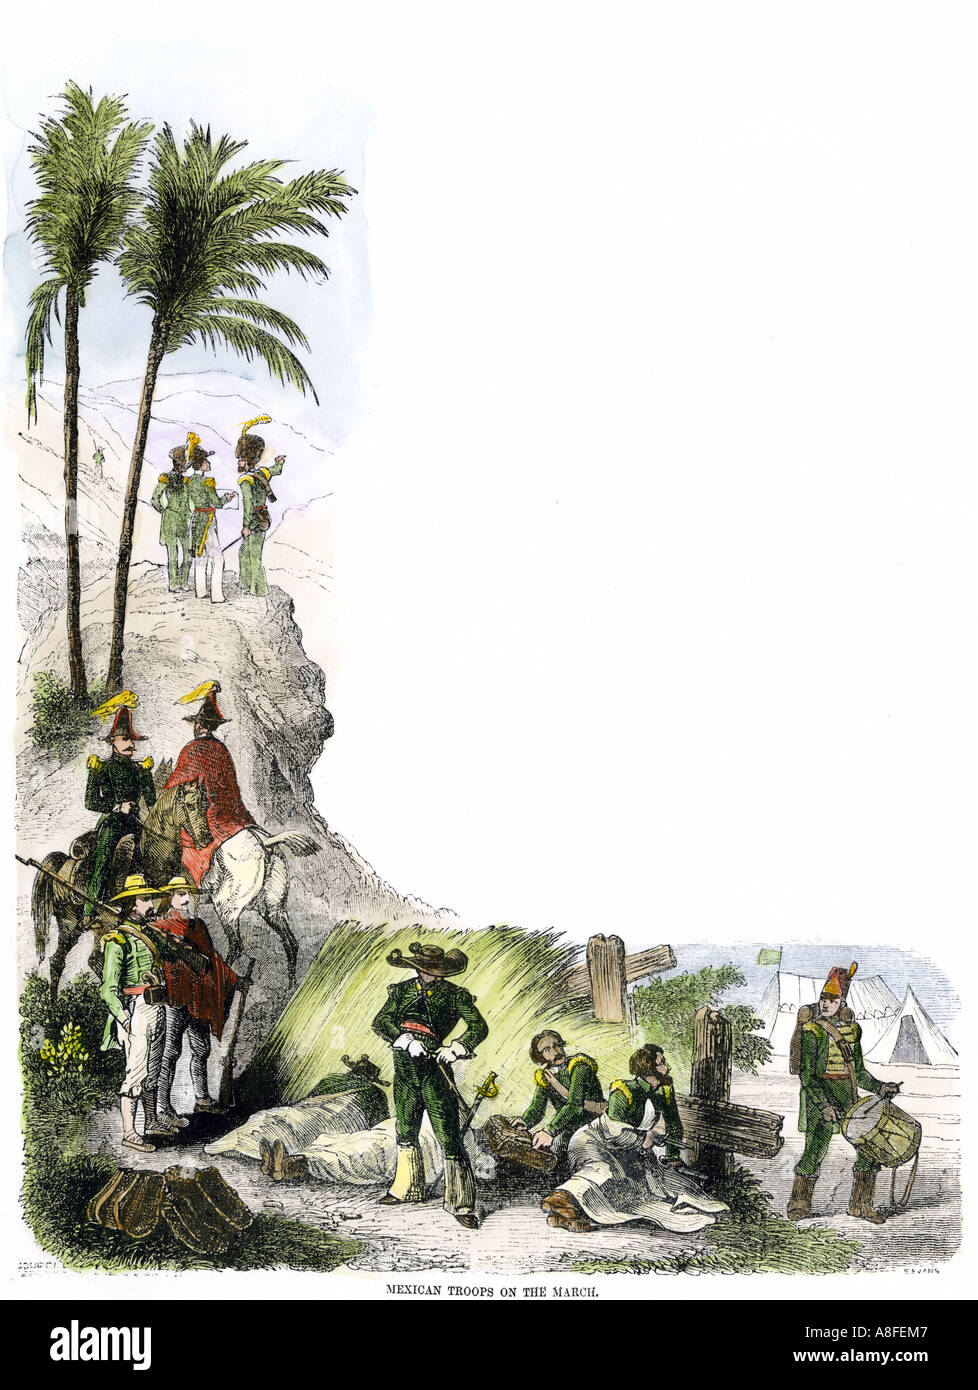 Las tropas mexicanas sobre la marcha durante la Guerra Mexicana 1840s. Xilografía coloreada a mano Foto de stock